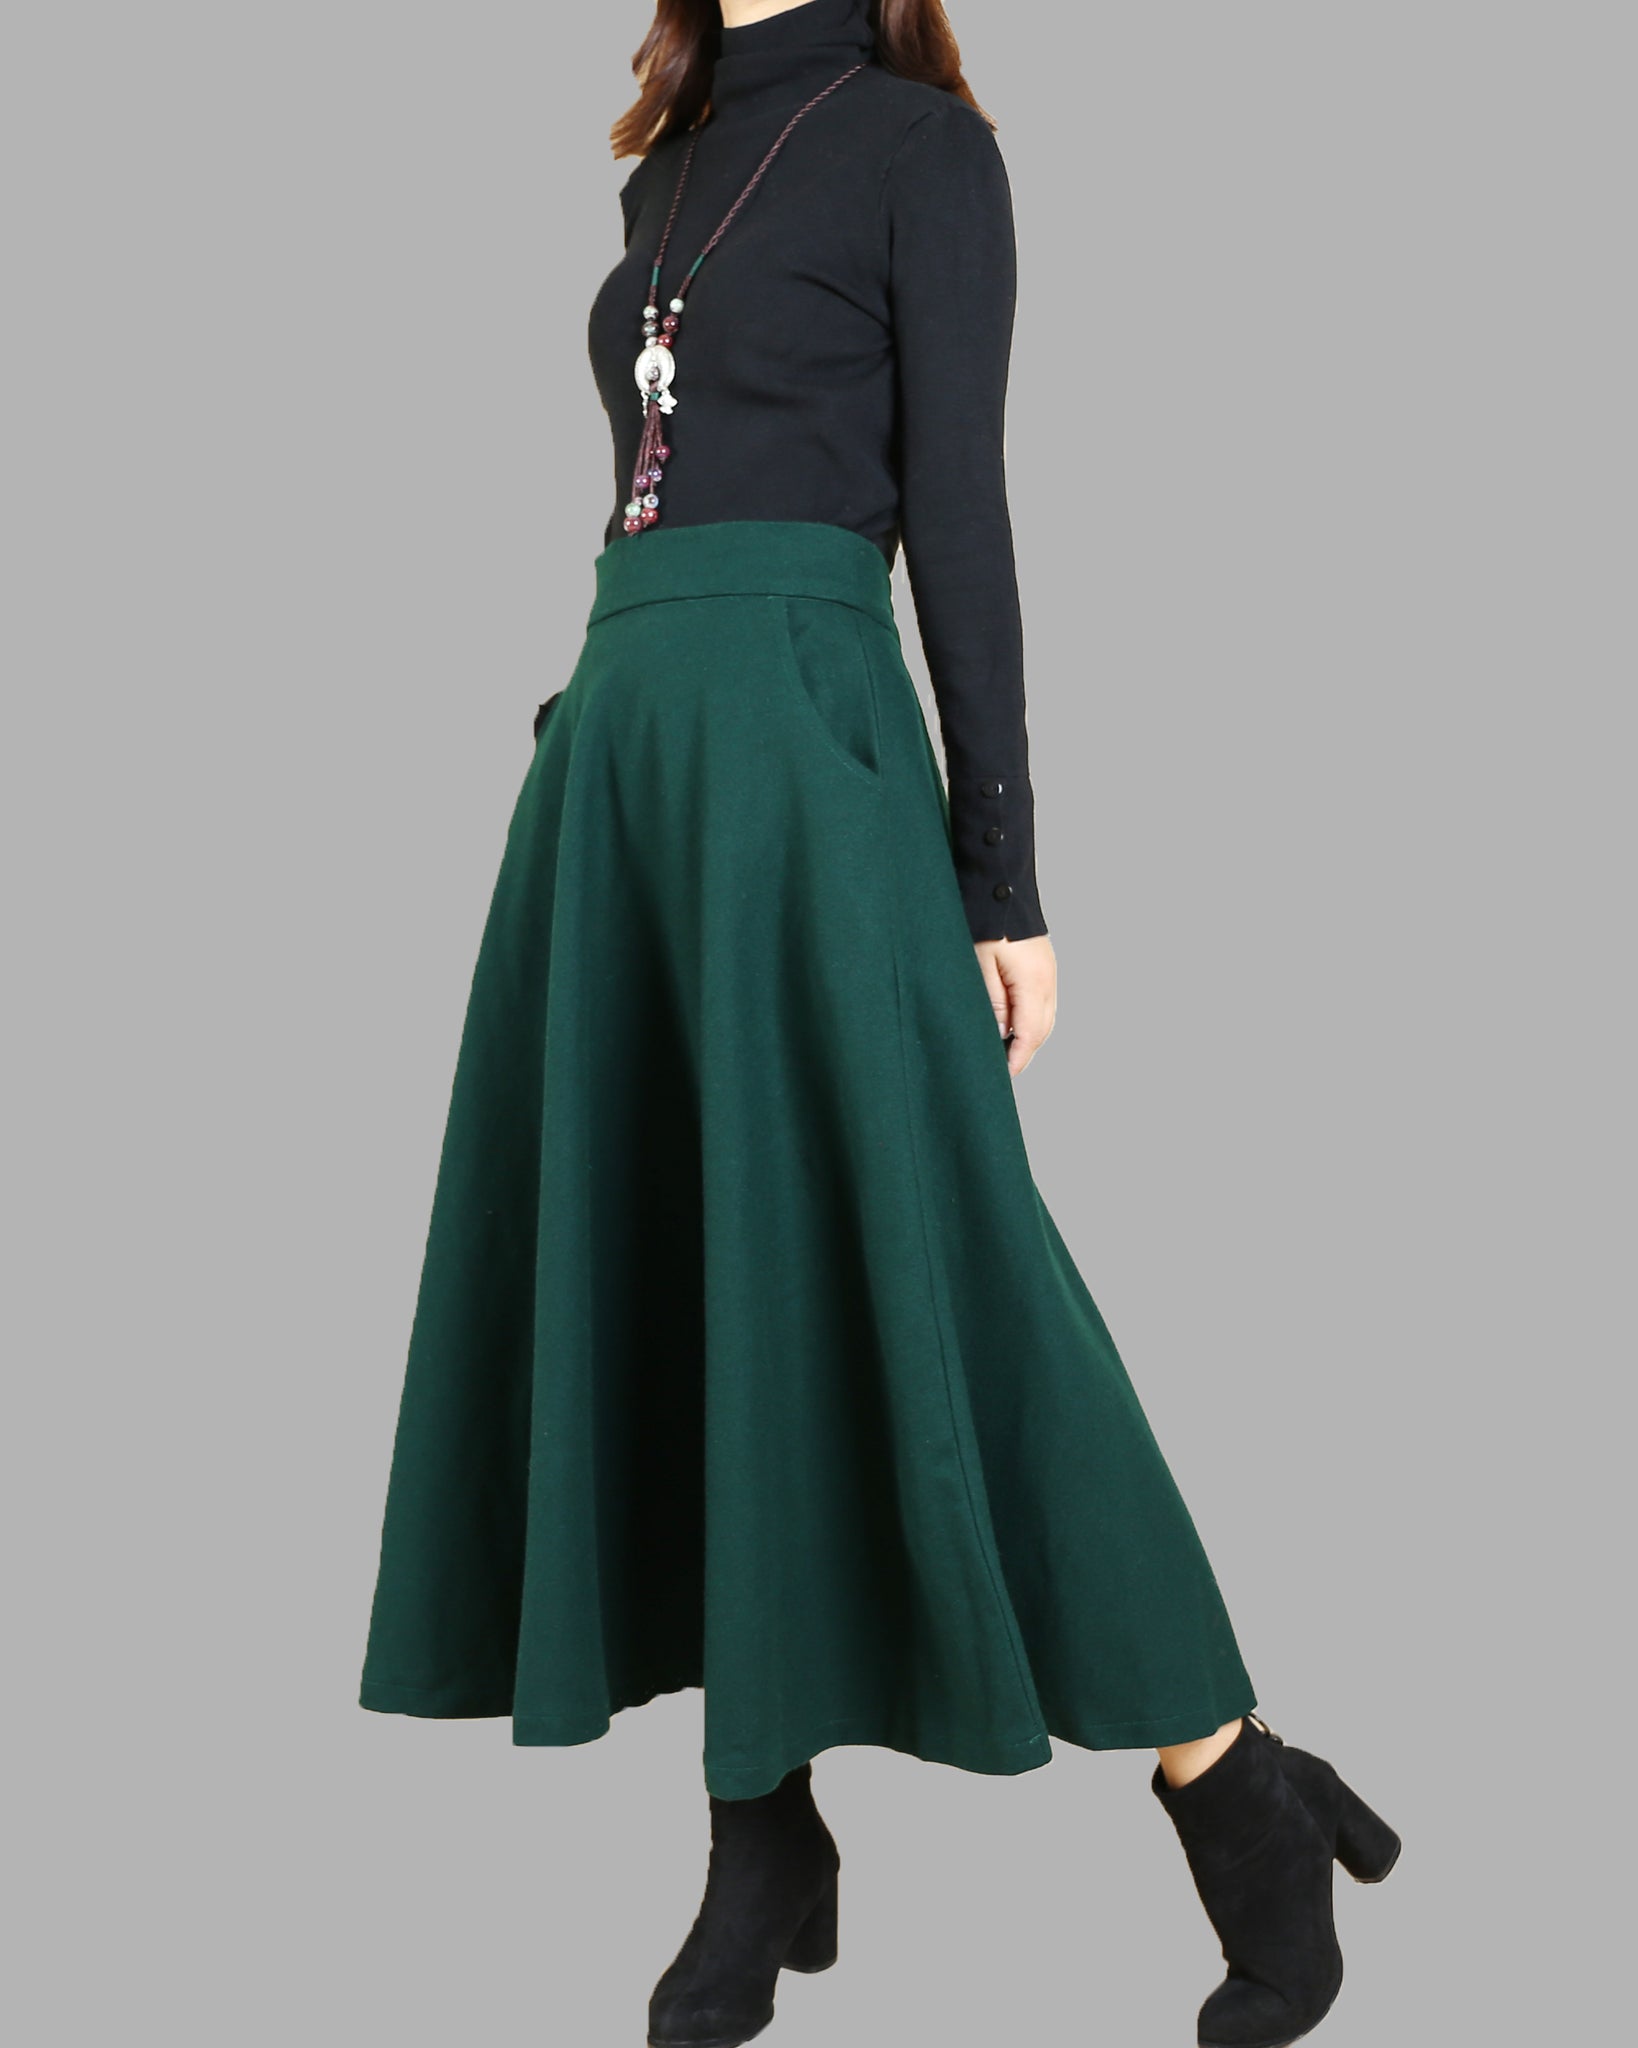 Women wool skirt/flared skirt/winter 